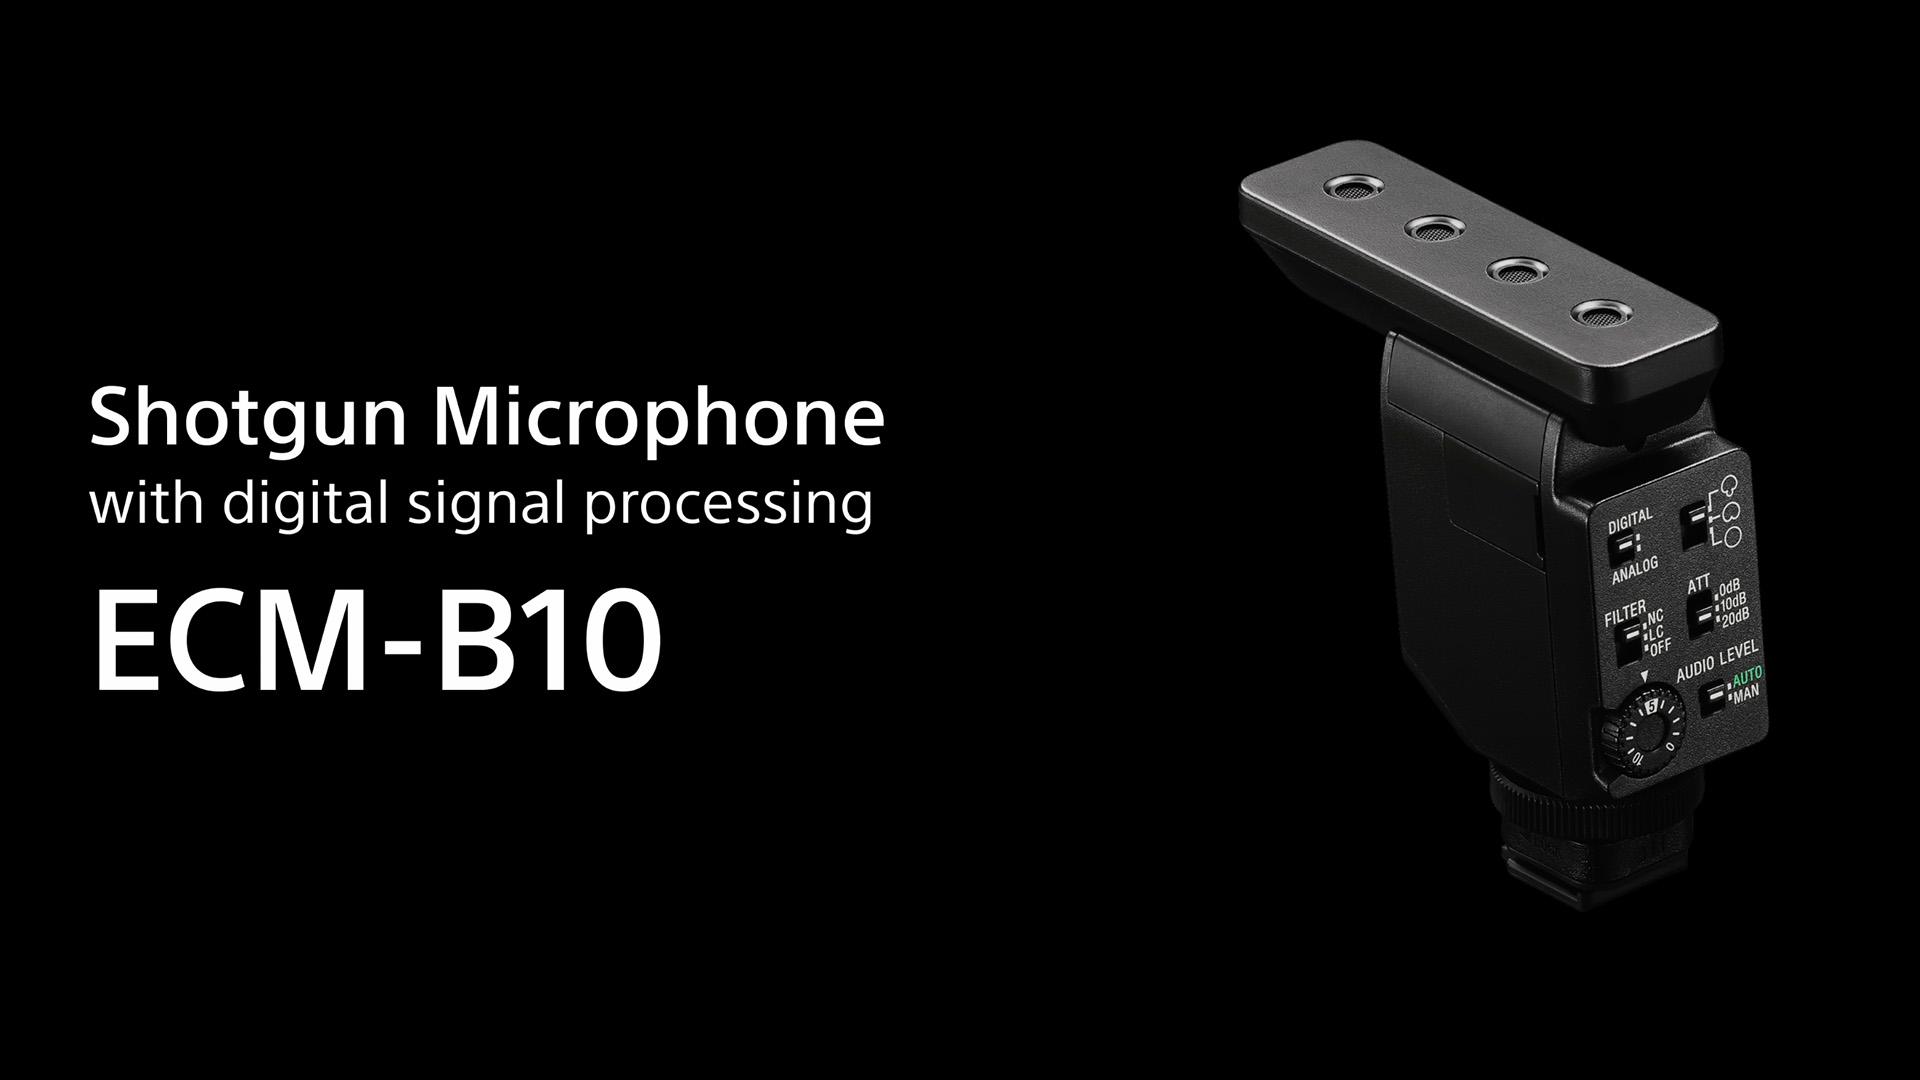 Sony Shotgun Mikrofon ECM-B10 auf ganz schwarzem Hintergrund mit einem Text auf dem "Shotgun Microphone with digital signal processing ECM-B10" steht